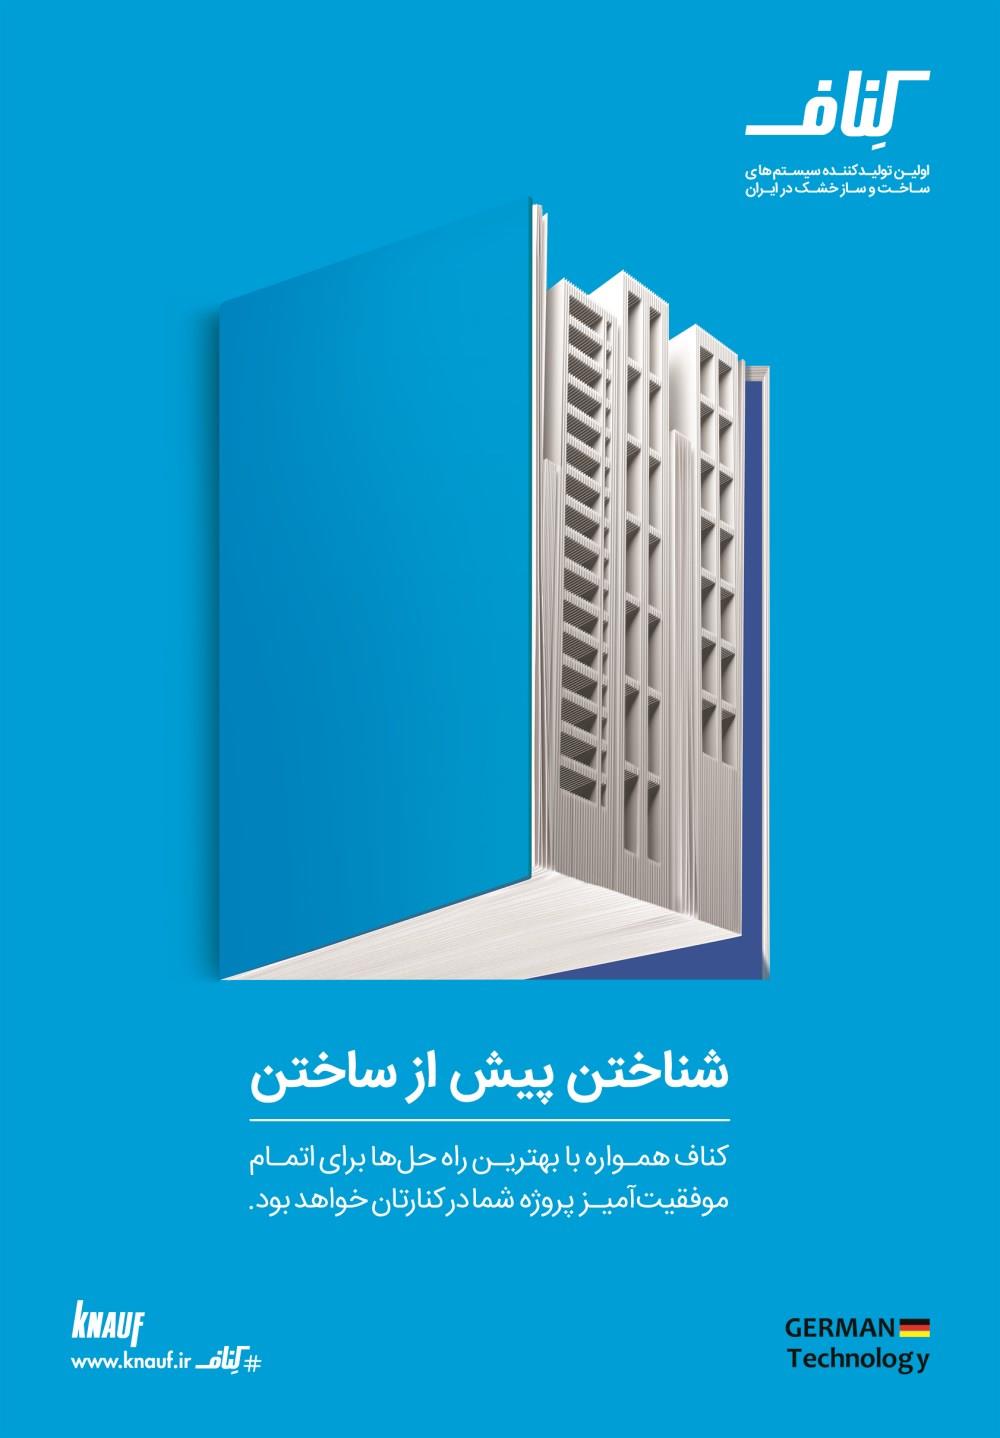 اولین-تولید-کننده-سیستم-های-ساخت-و-ساز-خشک-در-ایران-آگهی-در-شماره-343